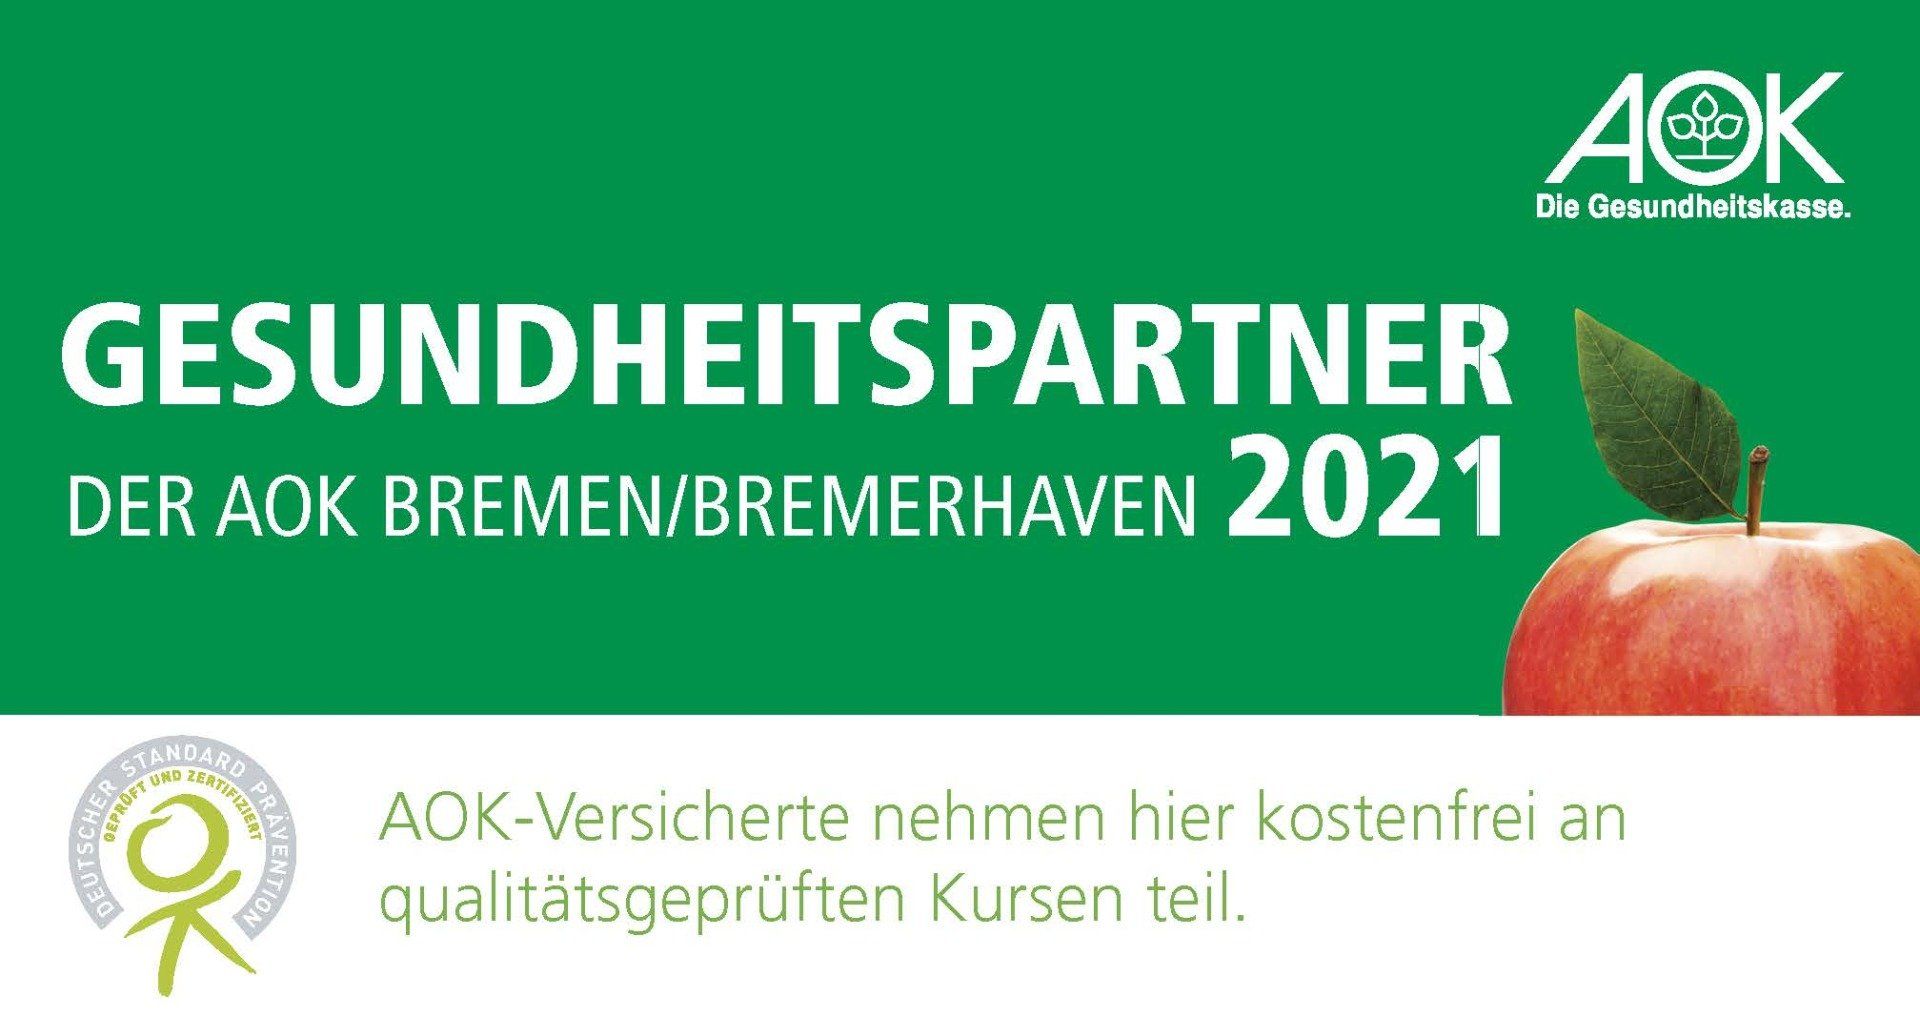 Mrs. Vita ist Gesundheitspartner der AOK Bremen/Bremerhaven 2021